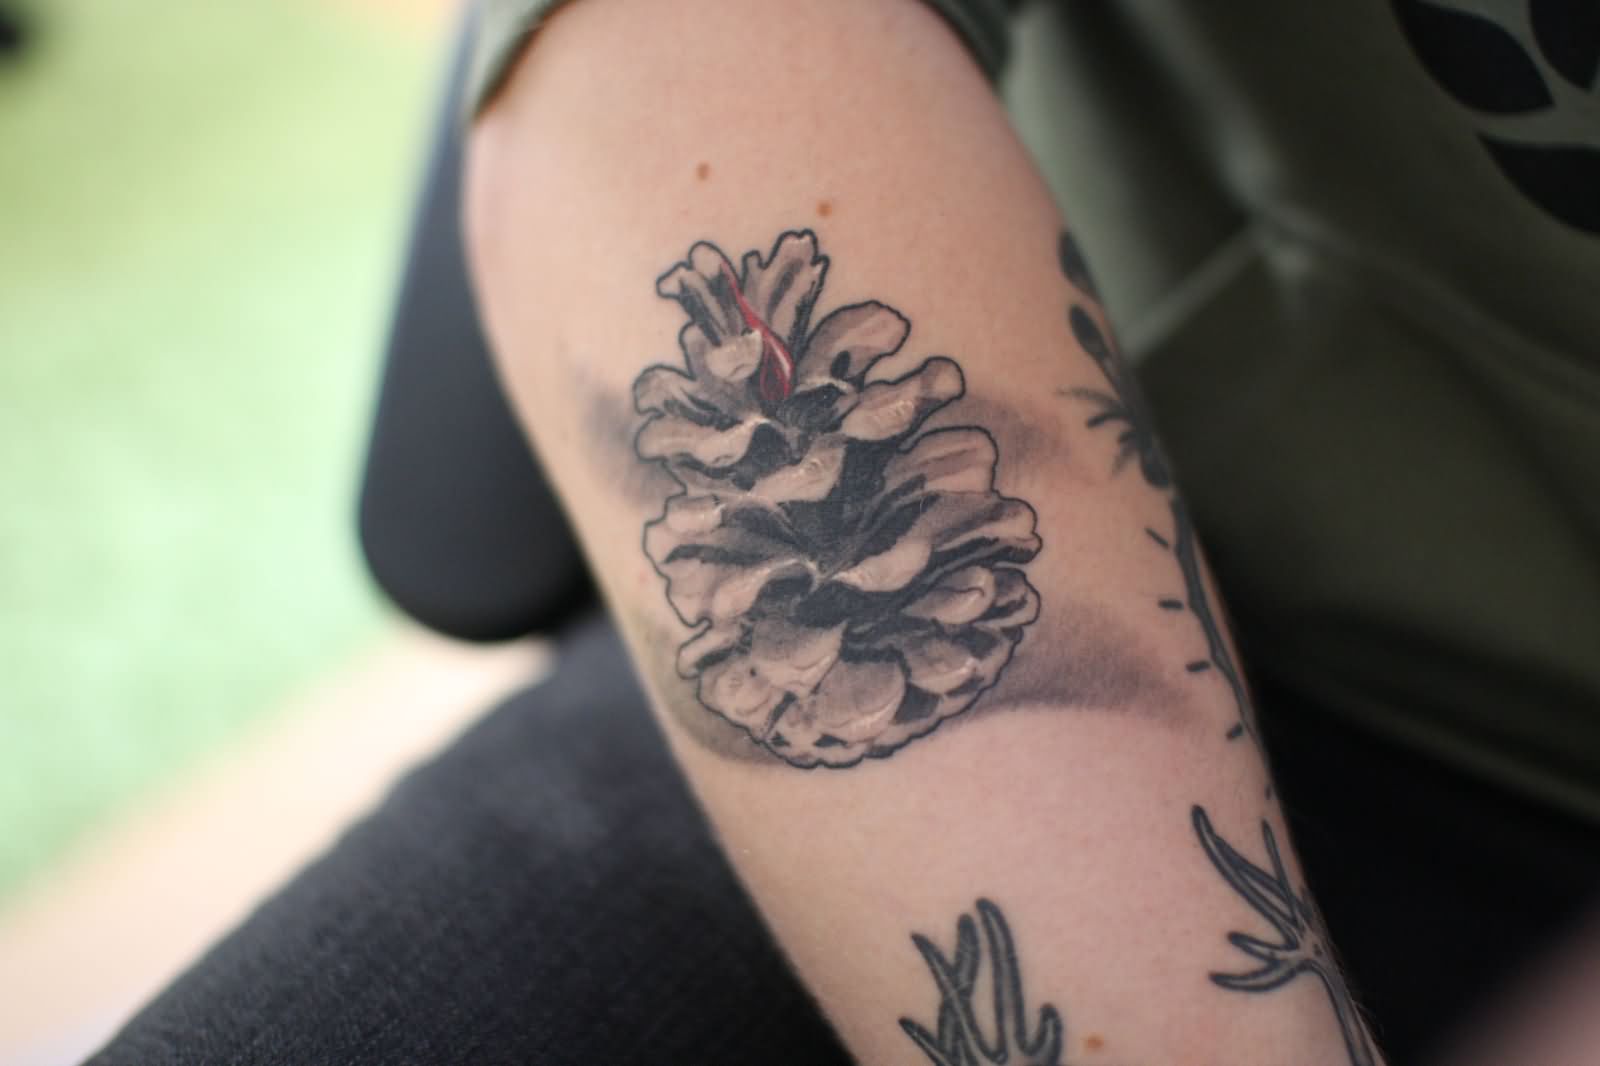 9. Pine cone tattoo designs - wide 2